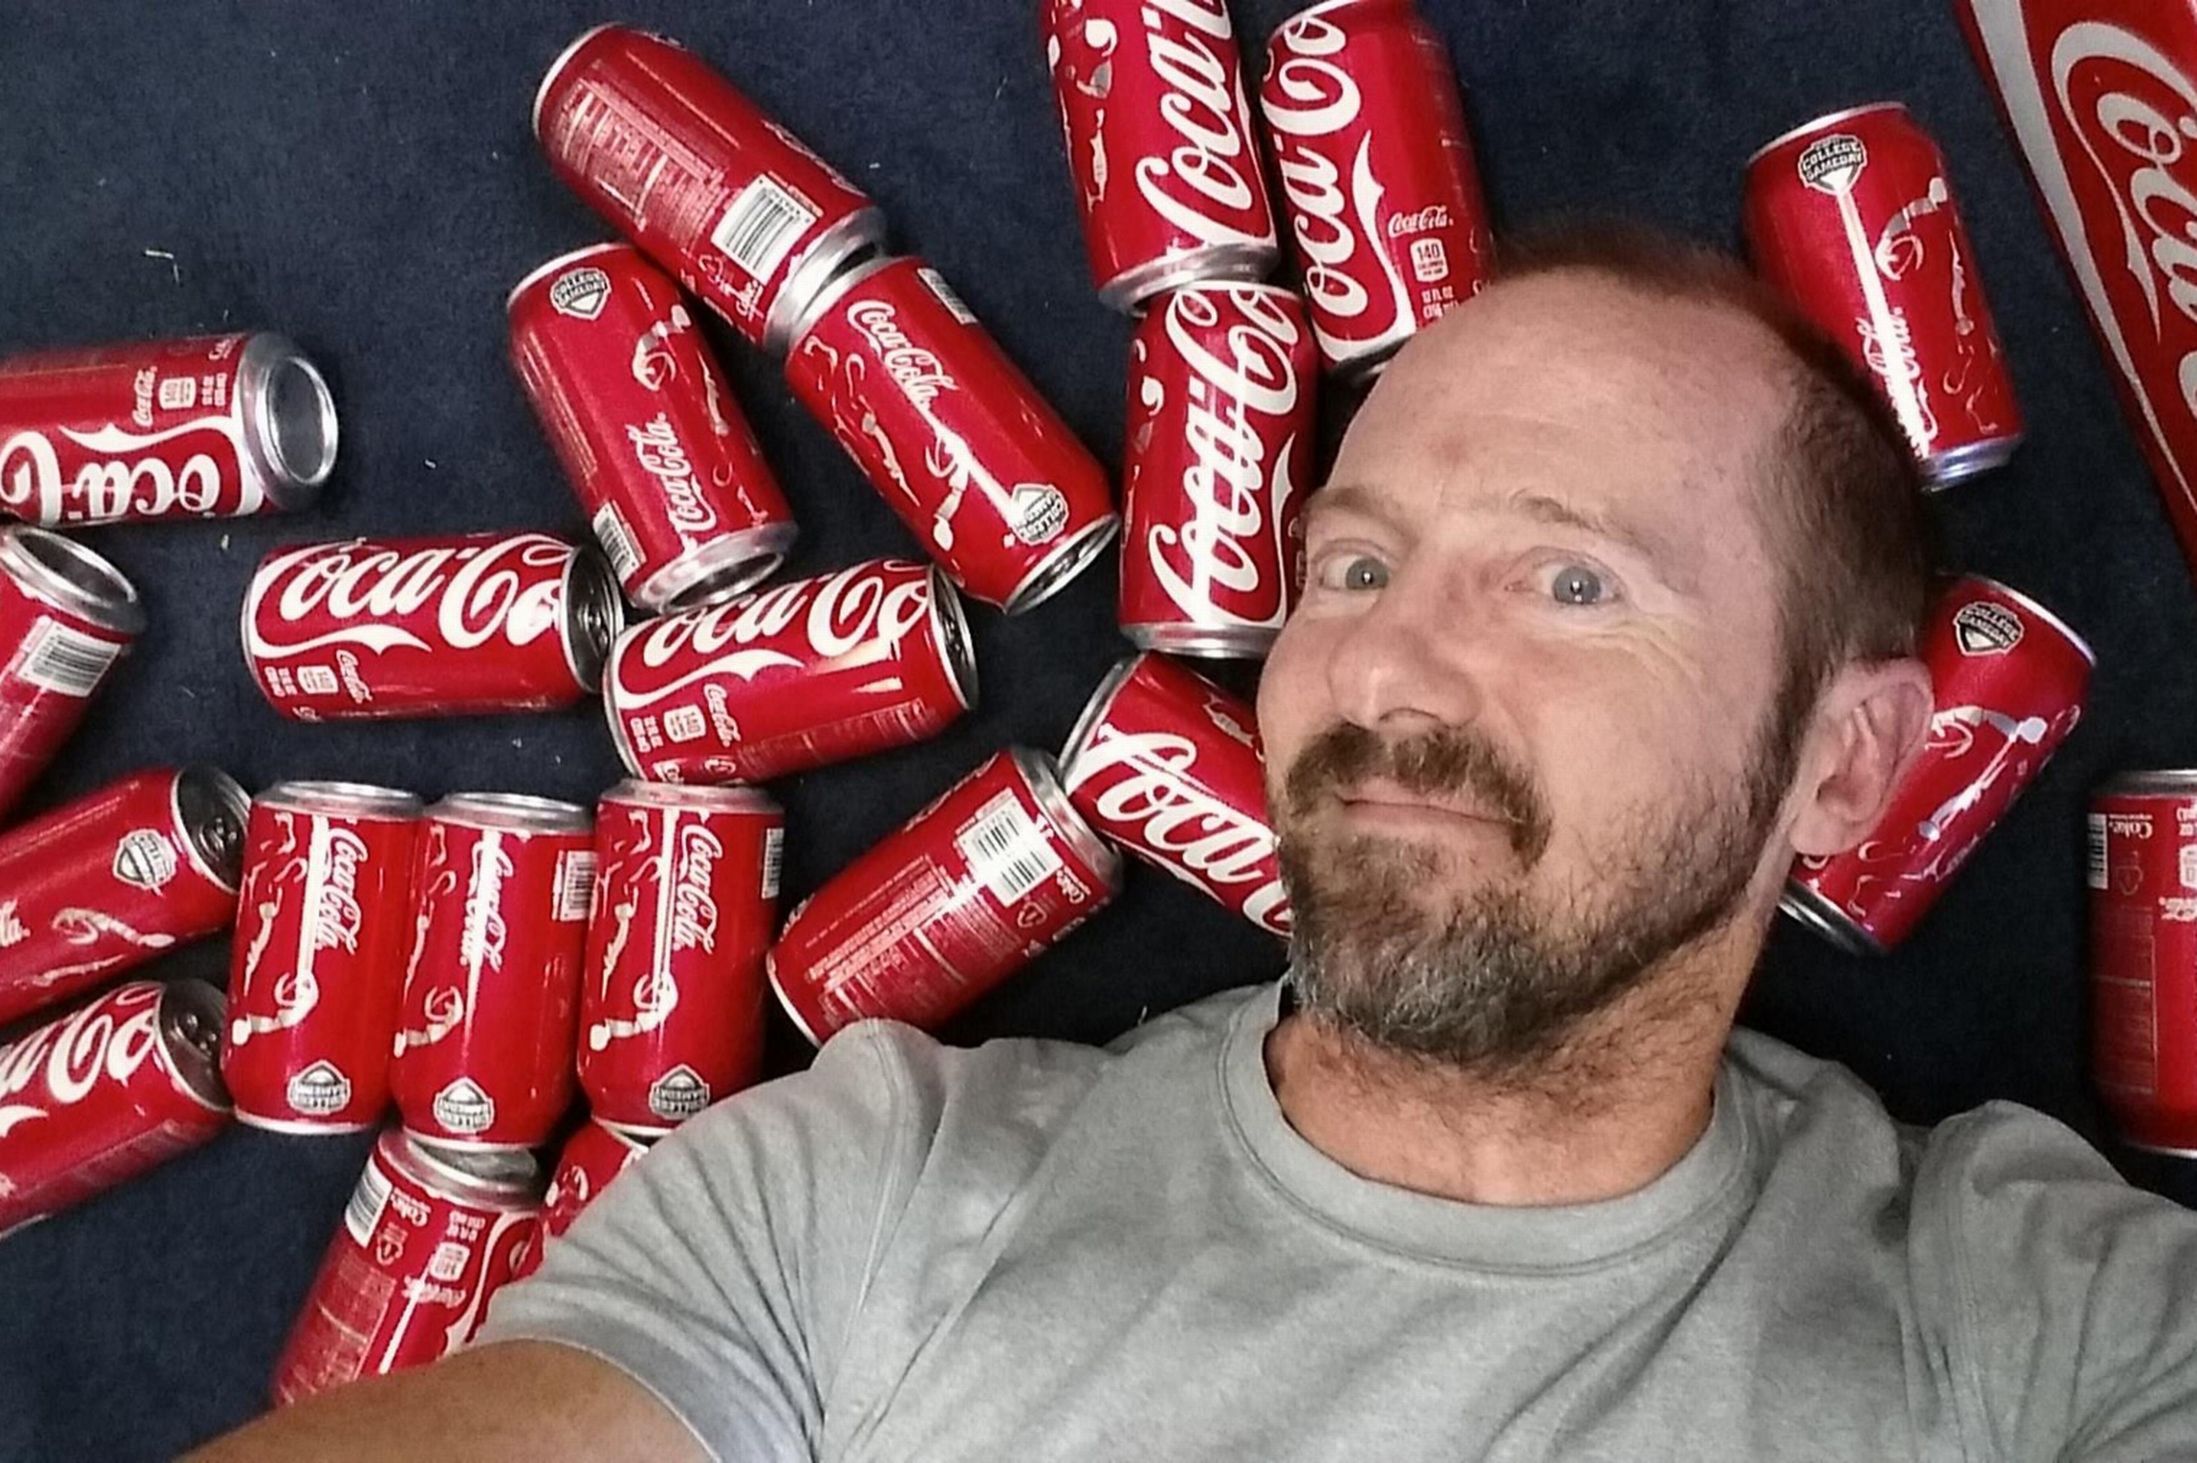 أمريكي في ال50 من عمره يشرب الكوكاكولا يوميا.. وهذه هي النتيجة..